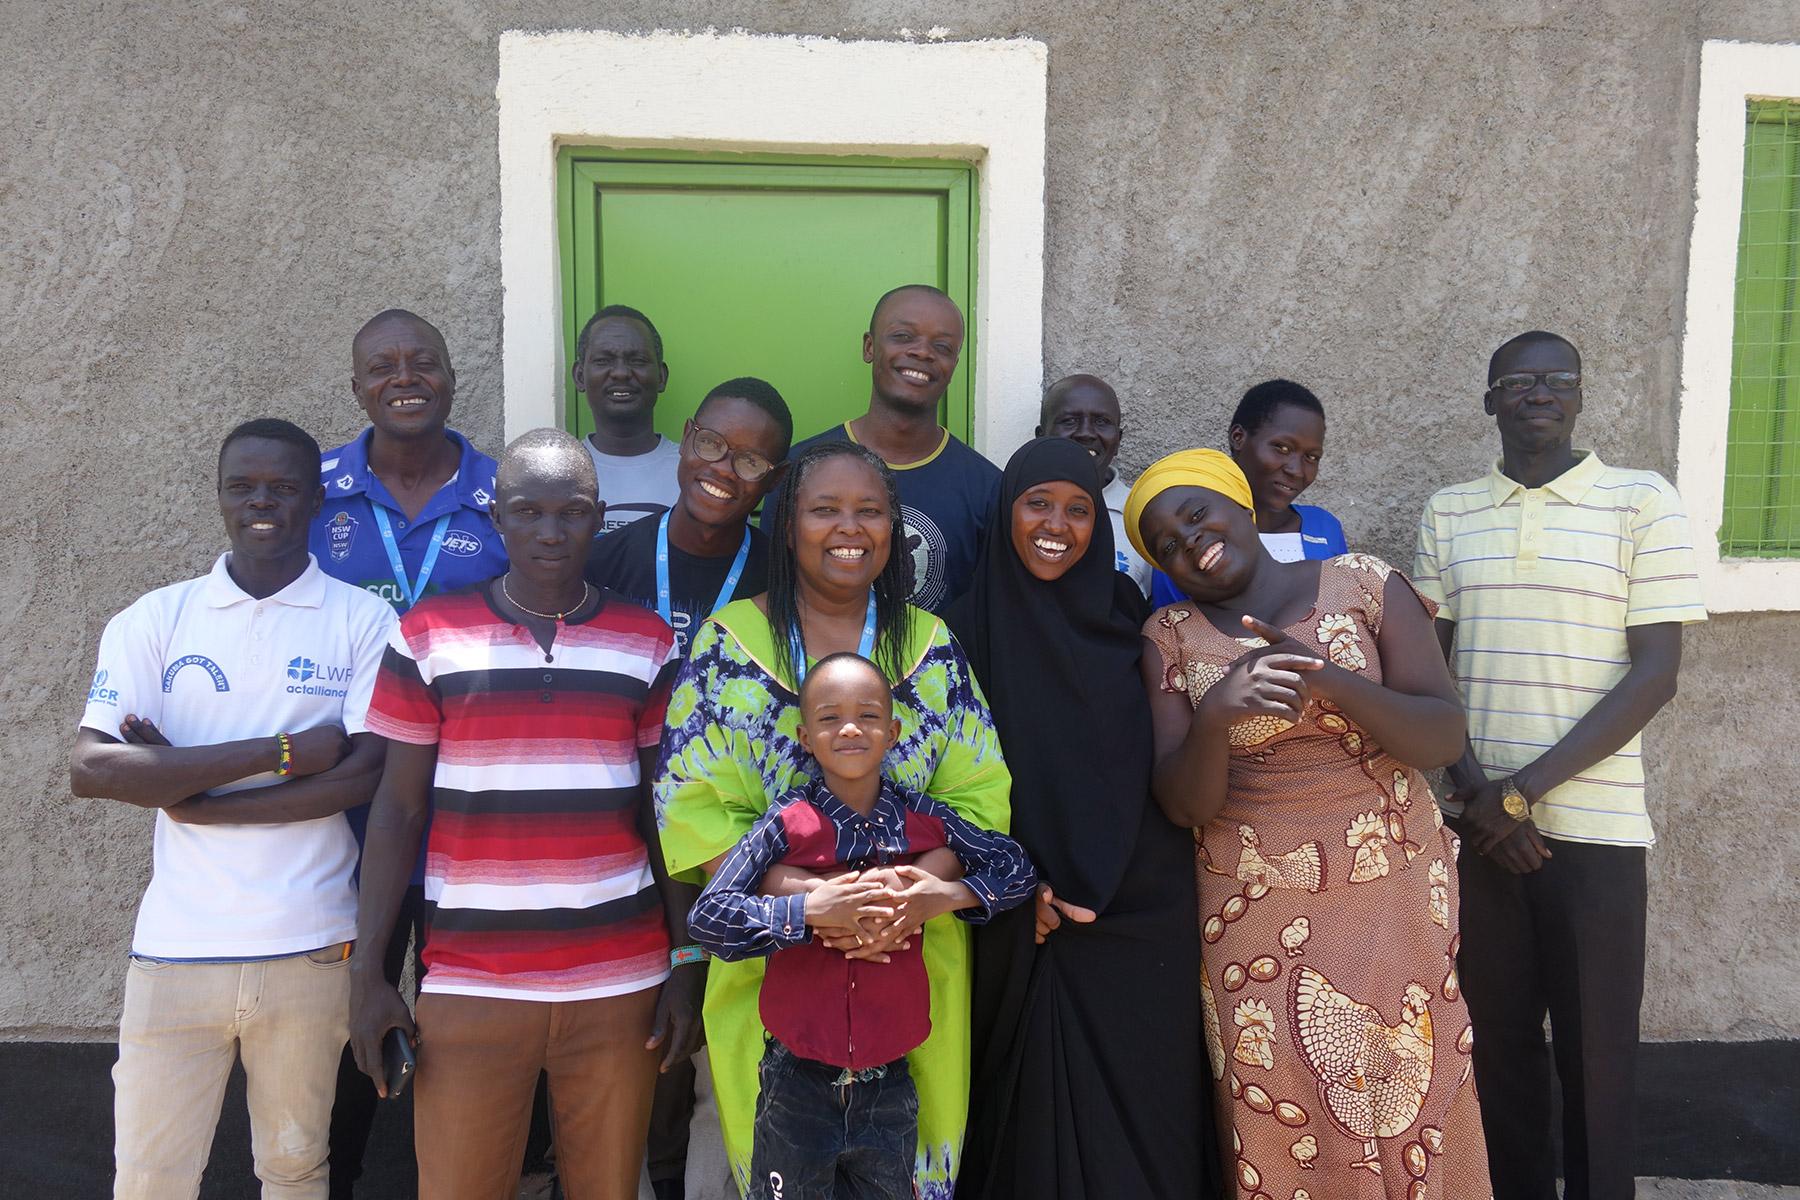 Bewohnerinnen und Bewohner des Flüchtlingslagers Kakuma im Nordwesten Kenias kommen für ein Gruppenfoto zusammen, nachdem sie an einem vom LWB geleiteten Workshop teilgenommen haben, um Gedichte für das Büchlein „I am Hope“ zu schreiben. Jackline Irankunda steht in der ersten Reihe ganz rechts. Foto: LWB/P. Schnoebelen